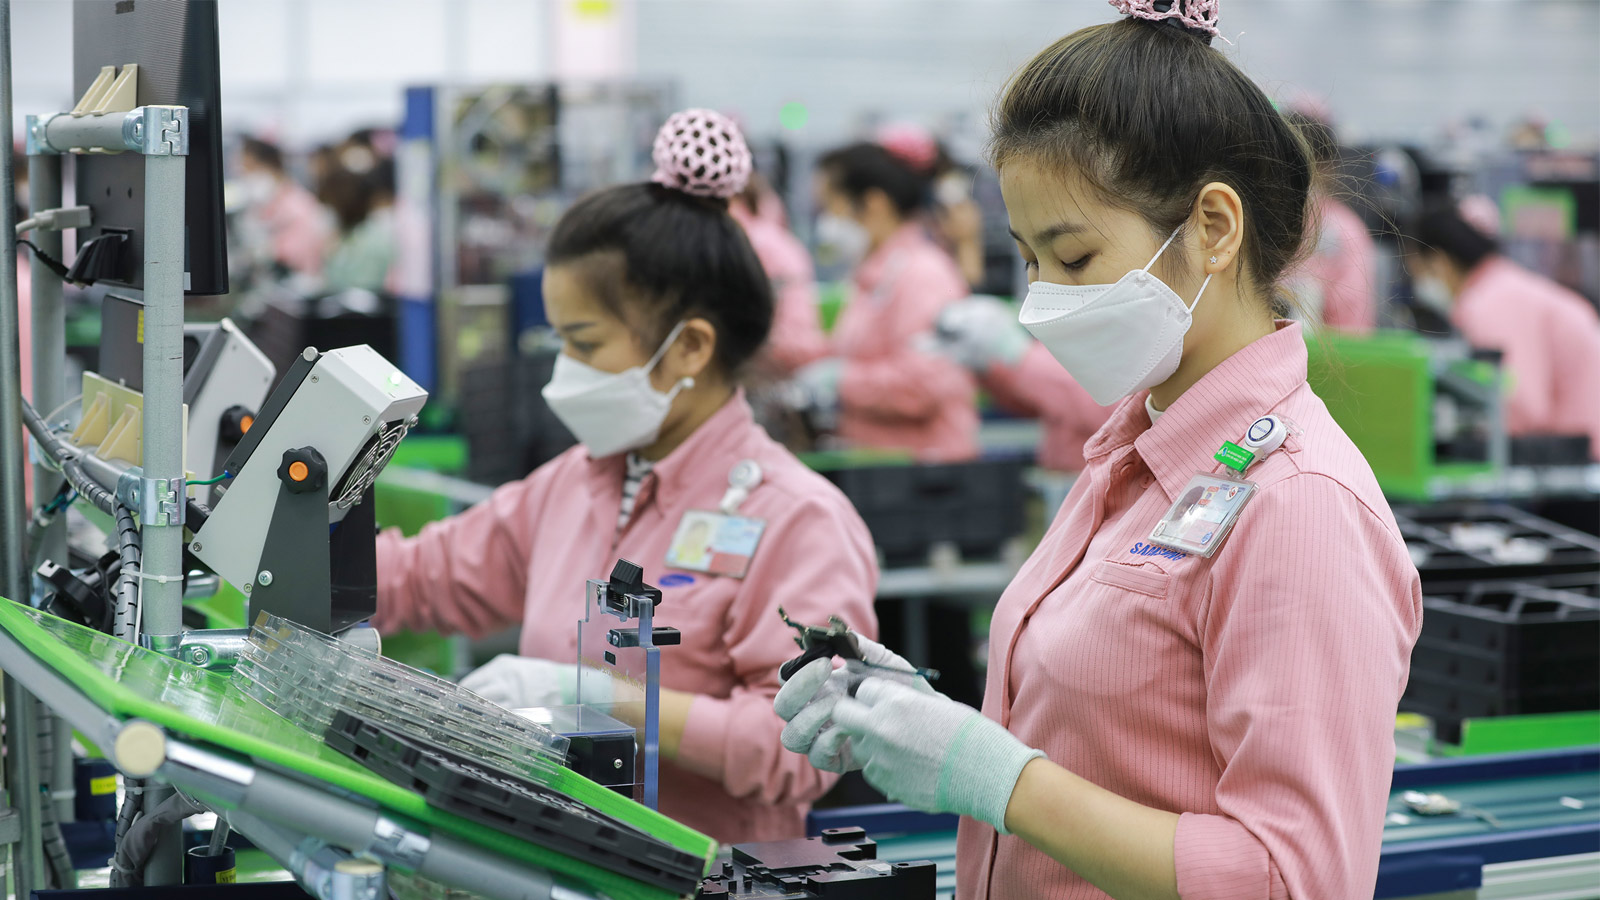 Việt Nam vươn lên trở thành 'cứ điểm' sản xuất điện thoại toàn cầu - Ảnh 1.